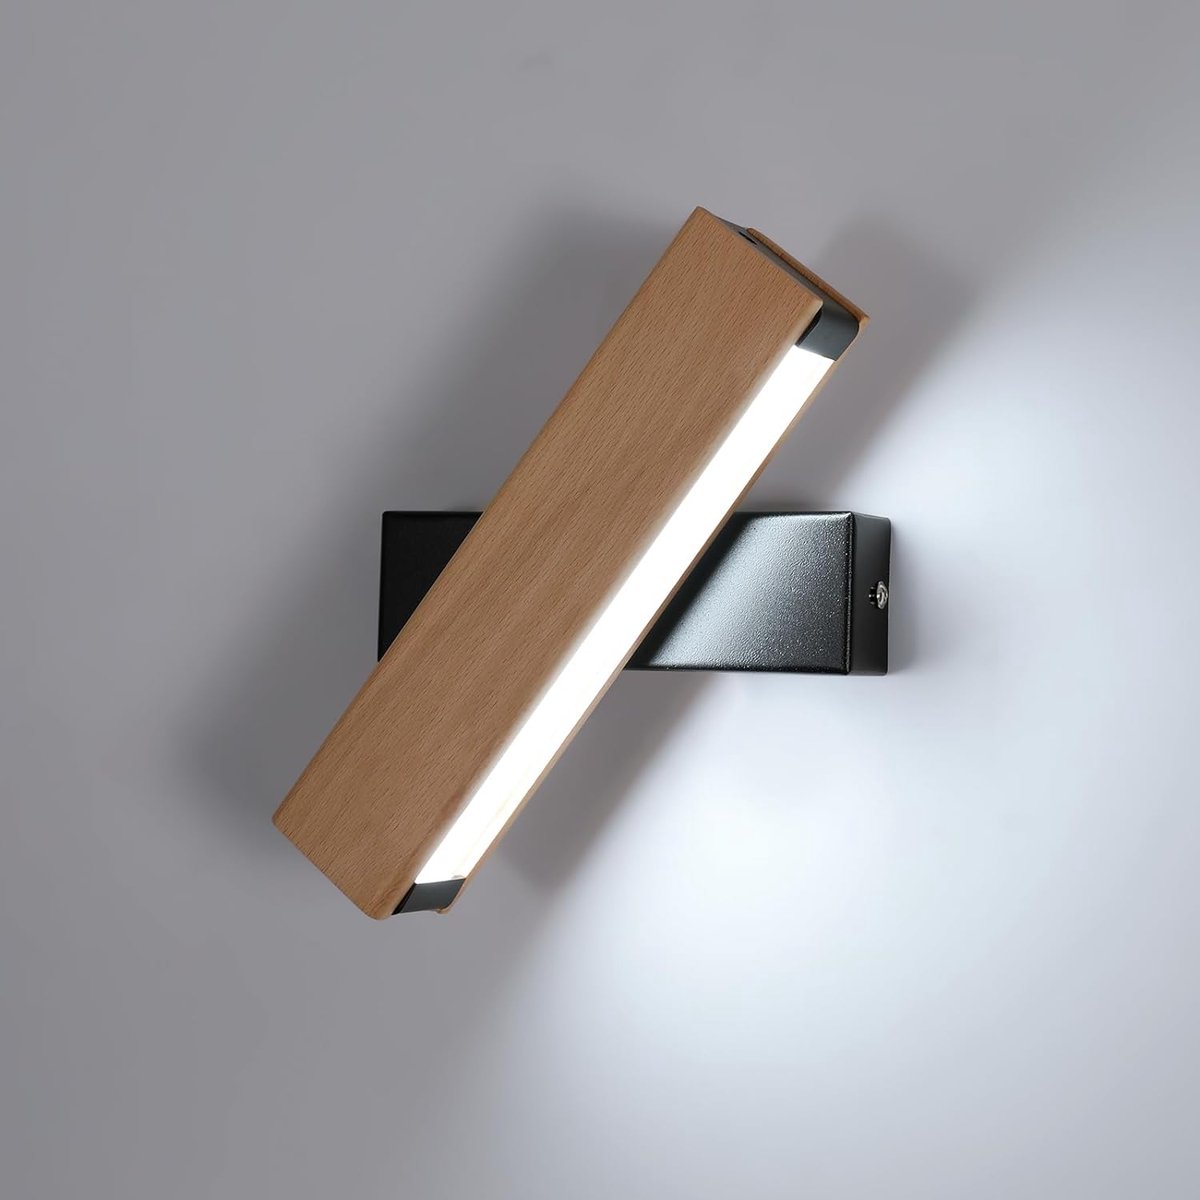 Goeco wandlamp - 21cm - Klein - LED - 5W - 562LM - houten - 360° draaibaar - 6500K - koel wit licht - voor slaapkamer, woonkamer, hal, kantoor